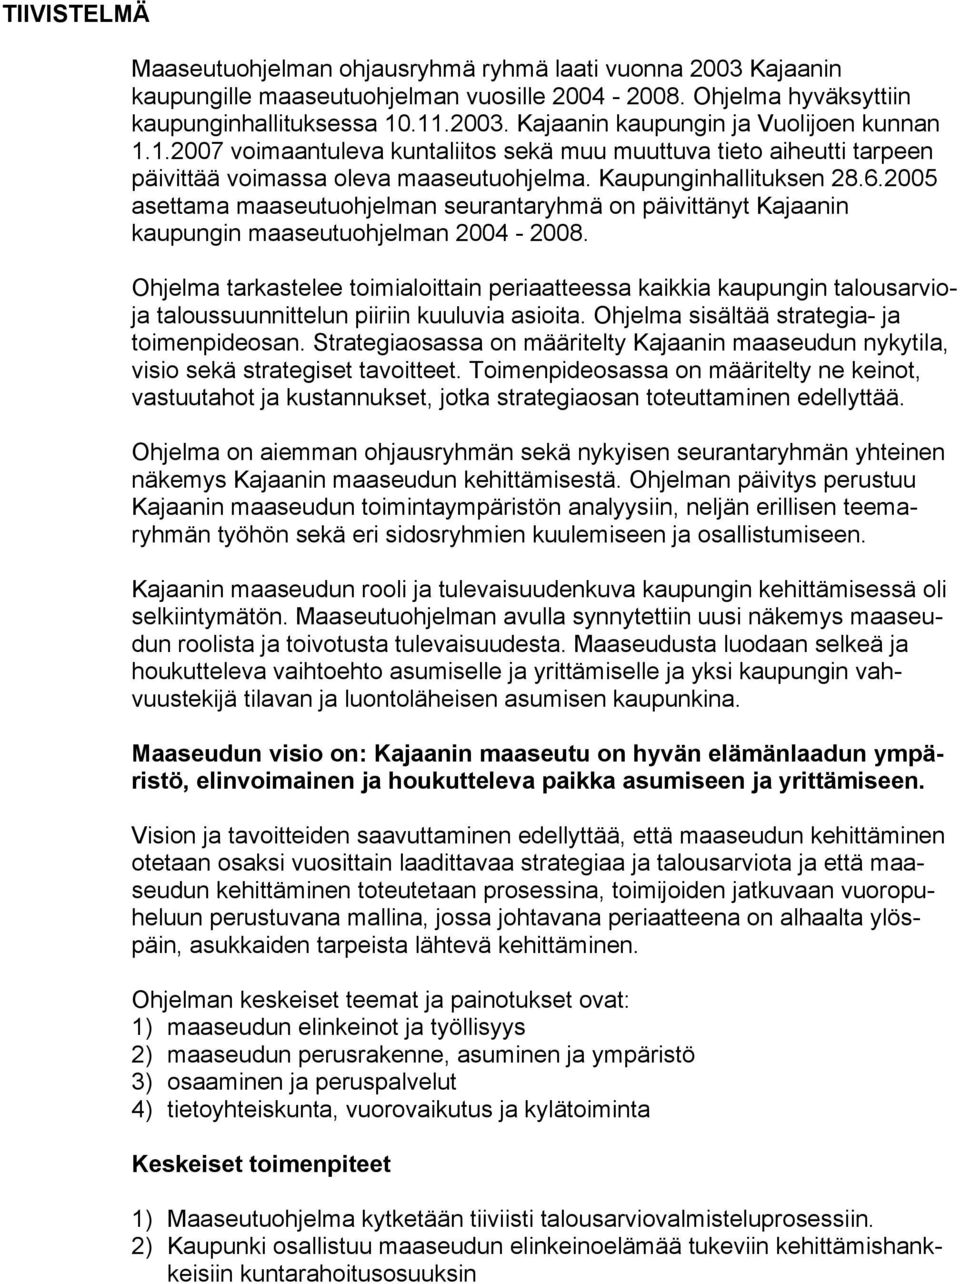 2005 asettama maaseutuohjelman seurantaryhmä on päivittänyt Kajaanin kaupungin maaseutuohjelman 2004-2008.